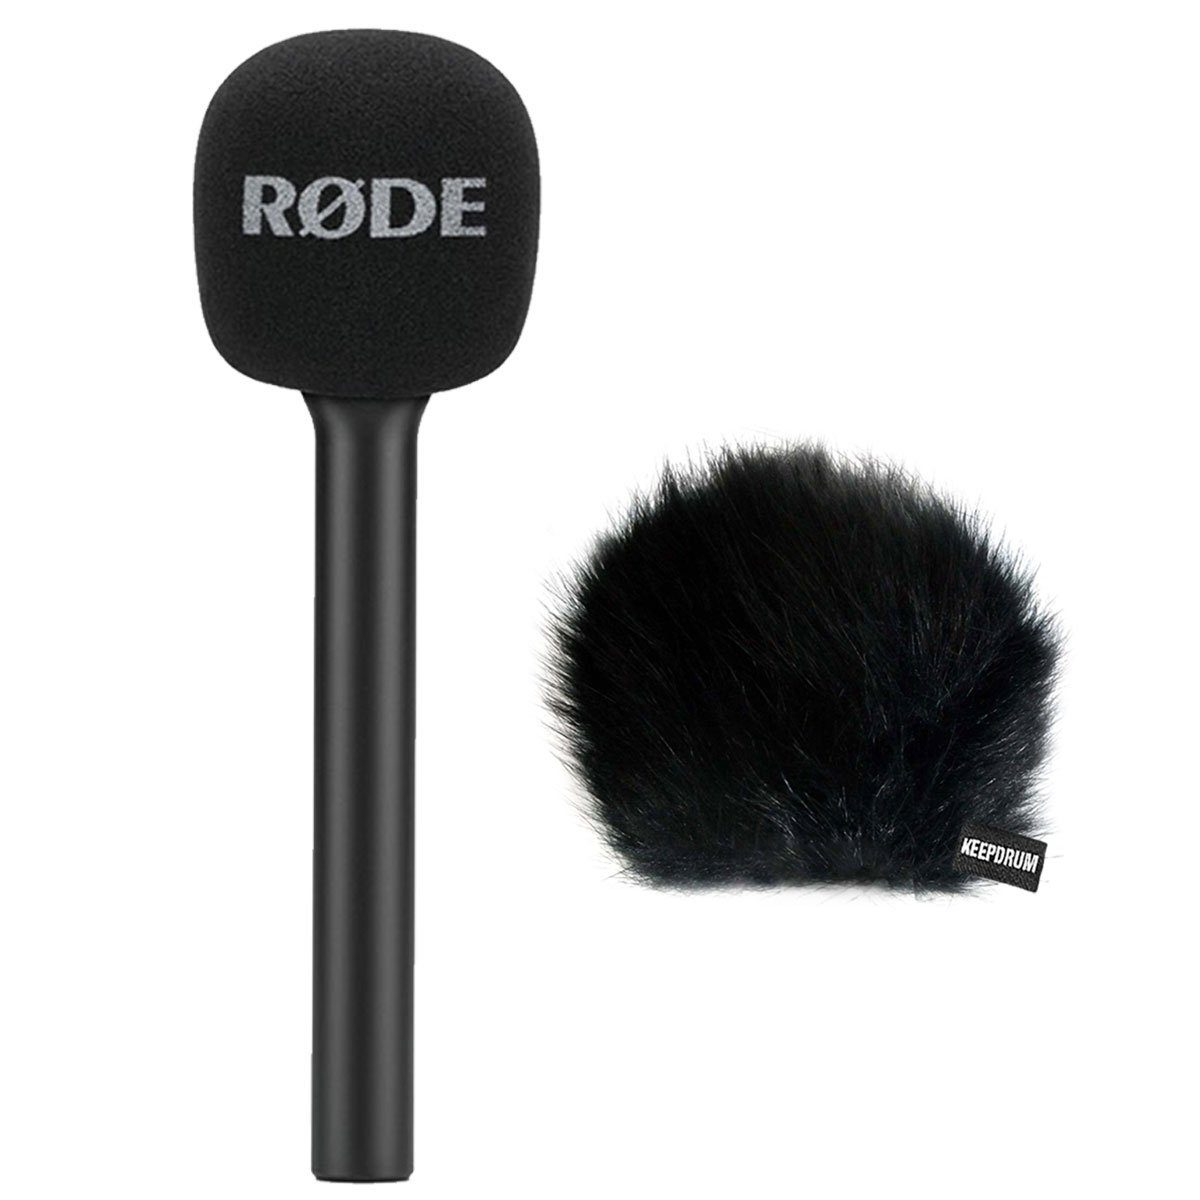 RODE Microphones Mikrofon Interview GO Handadapter mit WSBK Fell-Windschutz (Spar-Set), mit winschutz